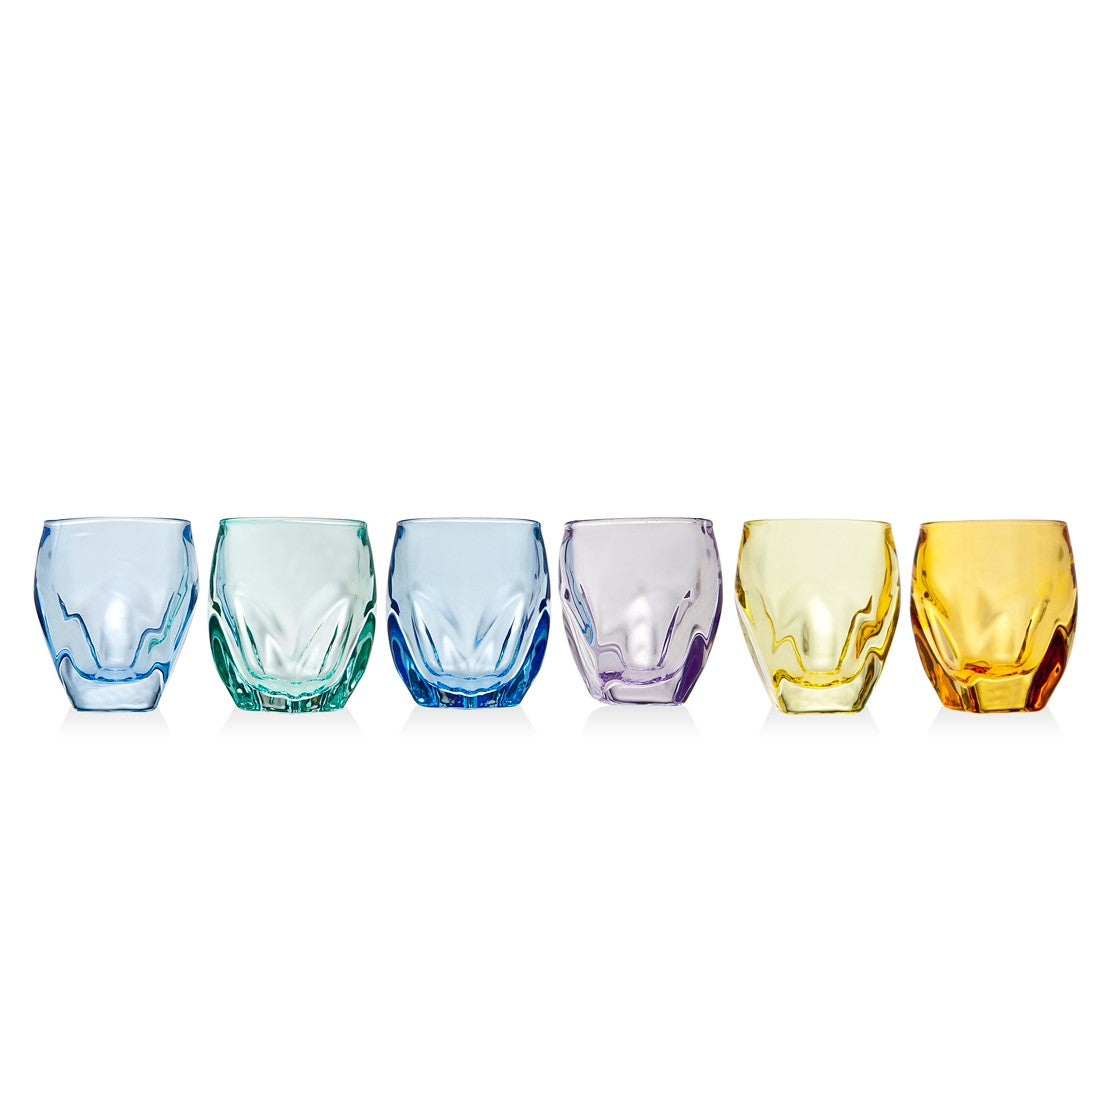 Godinger Silver Art Stockholm 48738 1.3 Oz Colored Shot Glasses, Set of 6